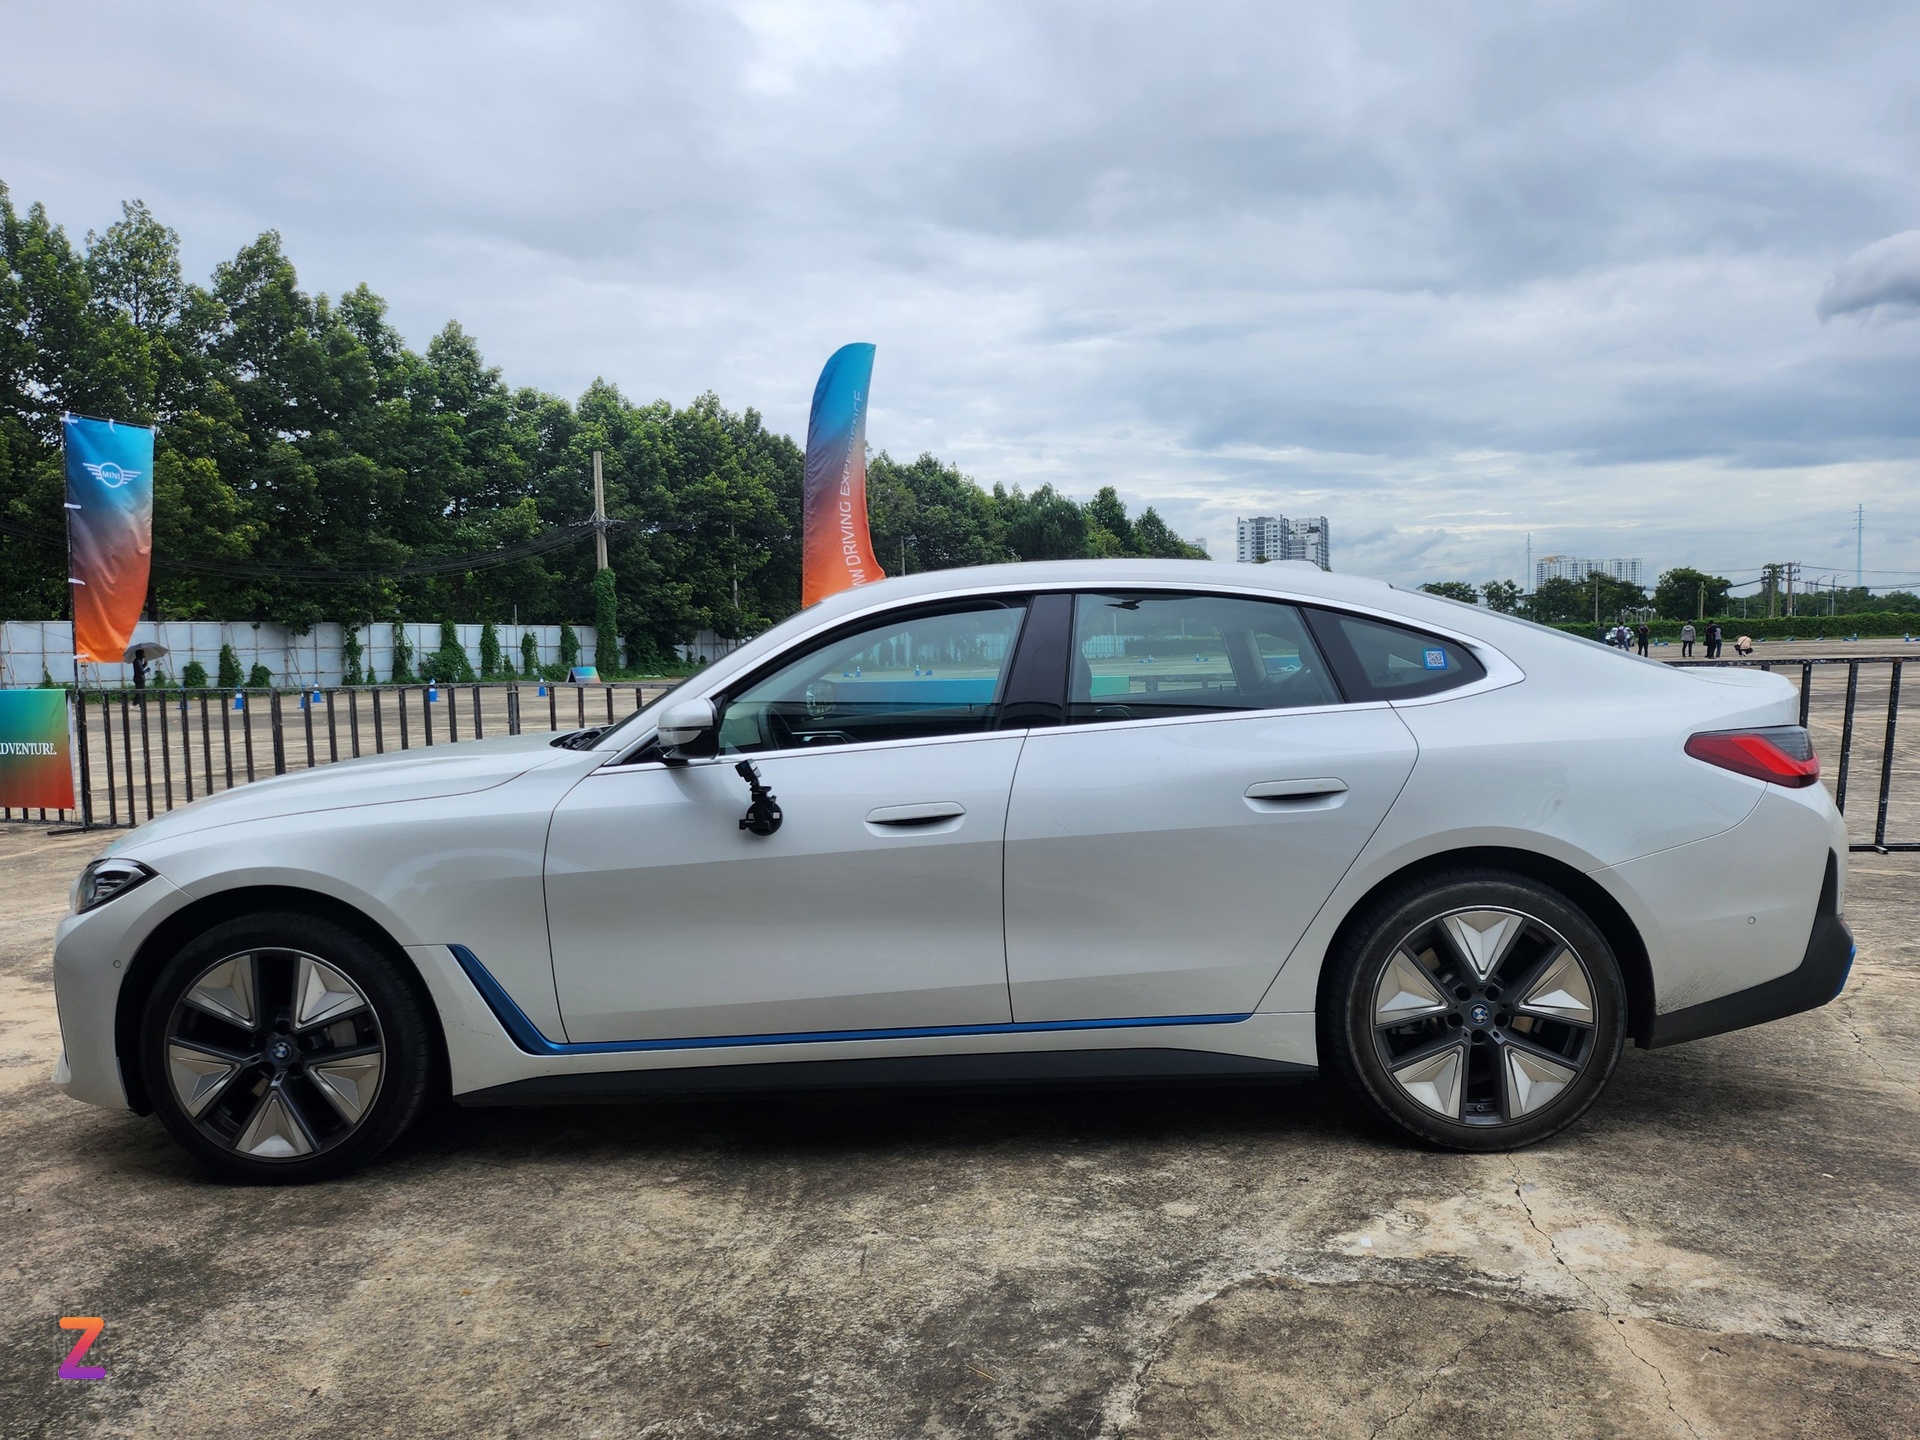 Cận cảnh BMW i4, đối thủ 'cấp cao' của BYD Seal tại Việt Nam